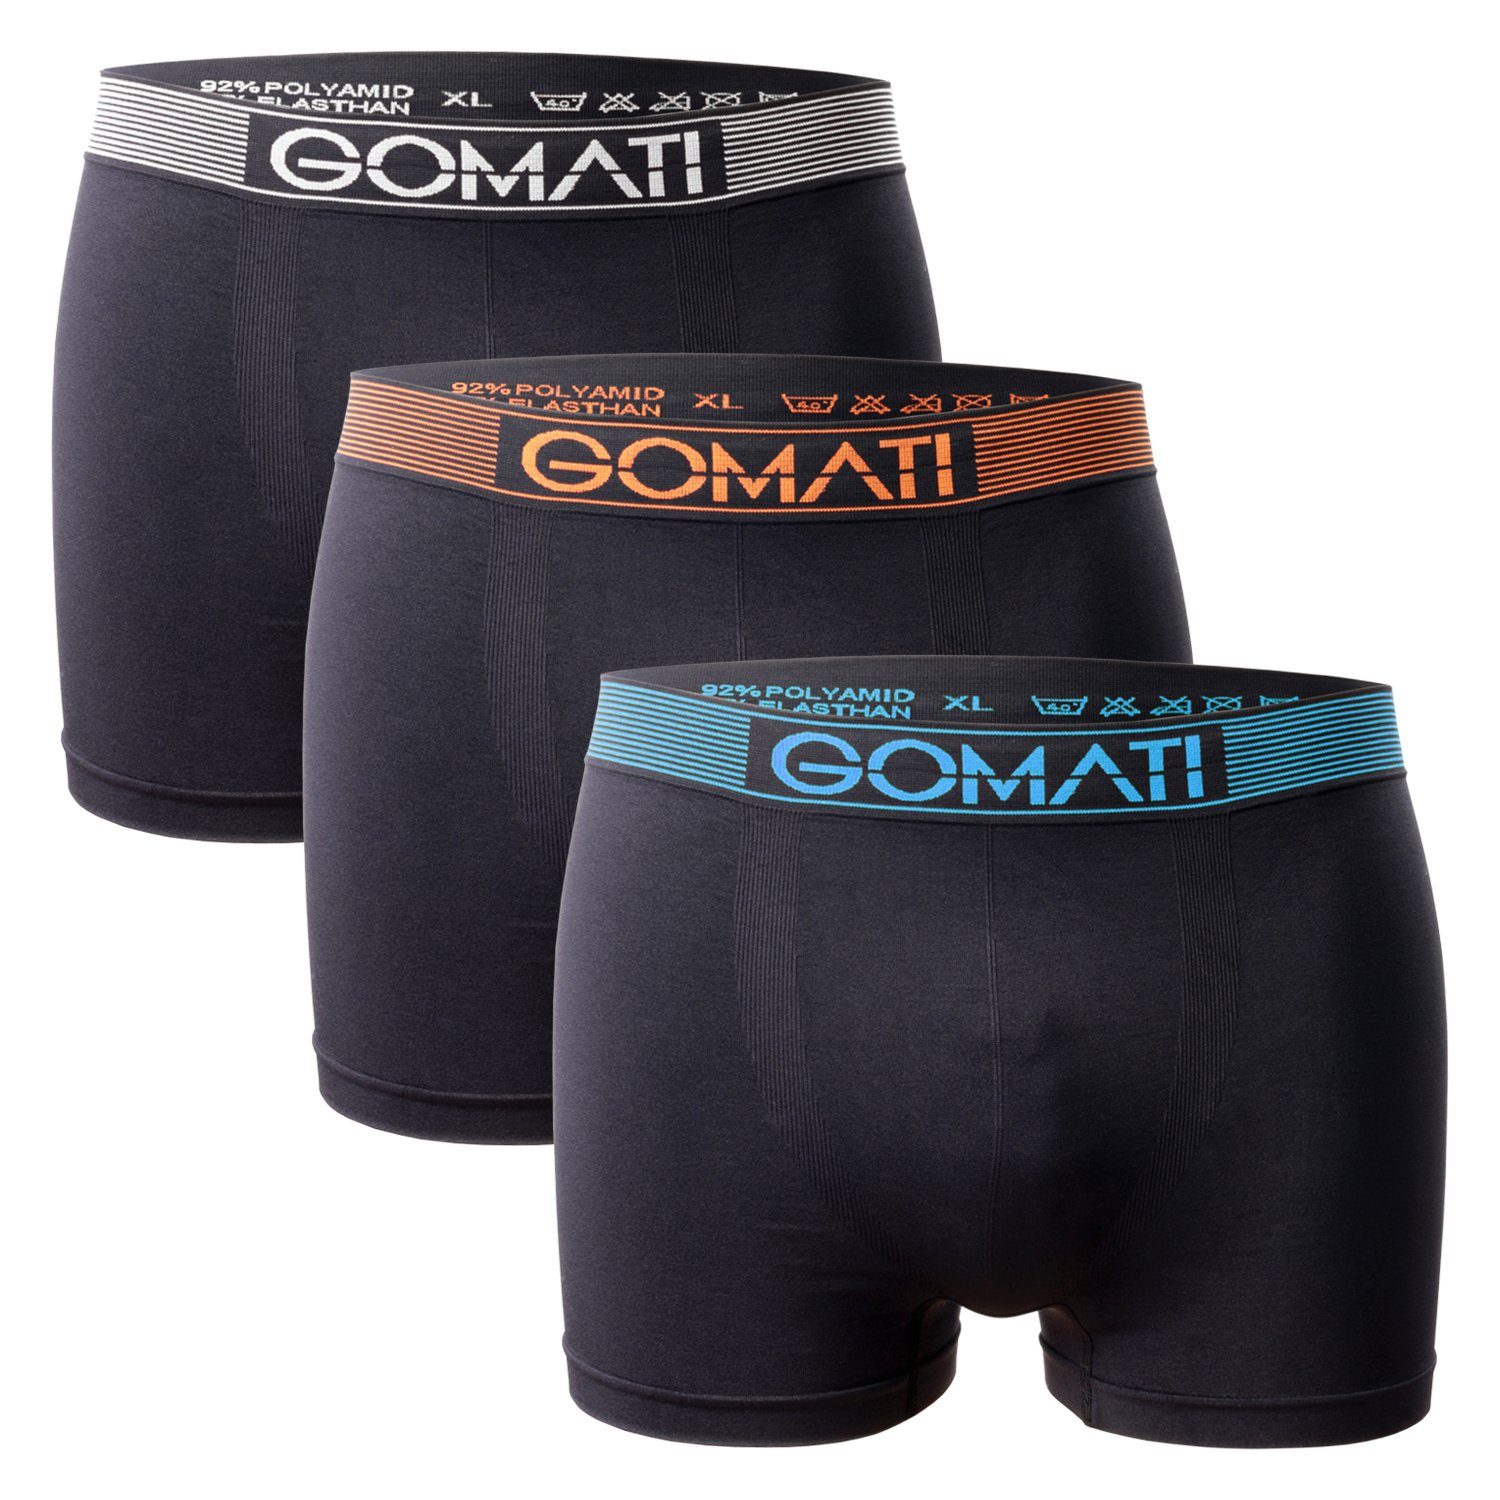 Gomati Boxershorts Herren Seamless Pants (3er Pack) Microfaser-Elasthan Boxershorts Black Mix | Boxershorts